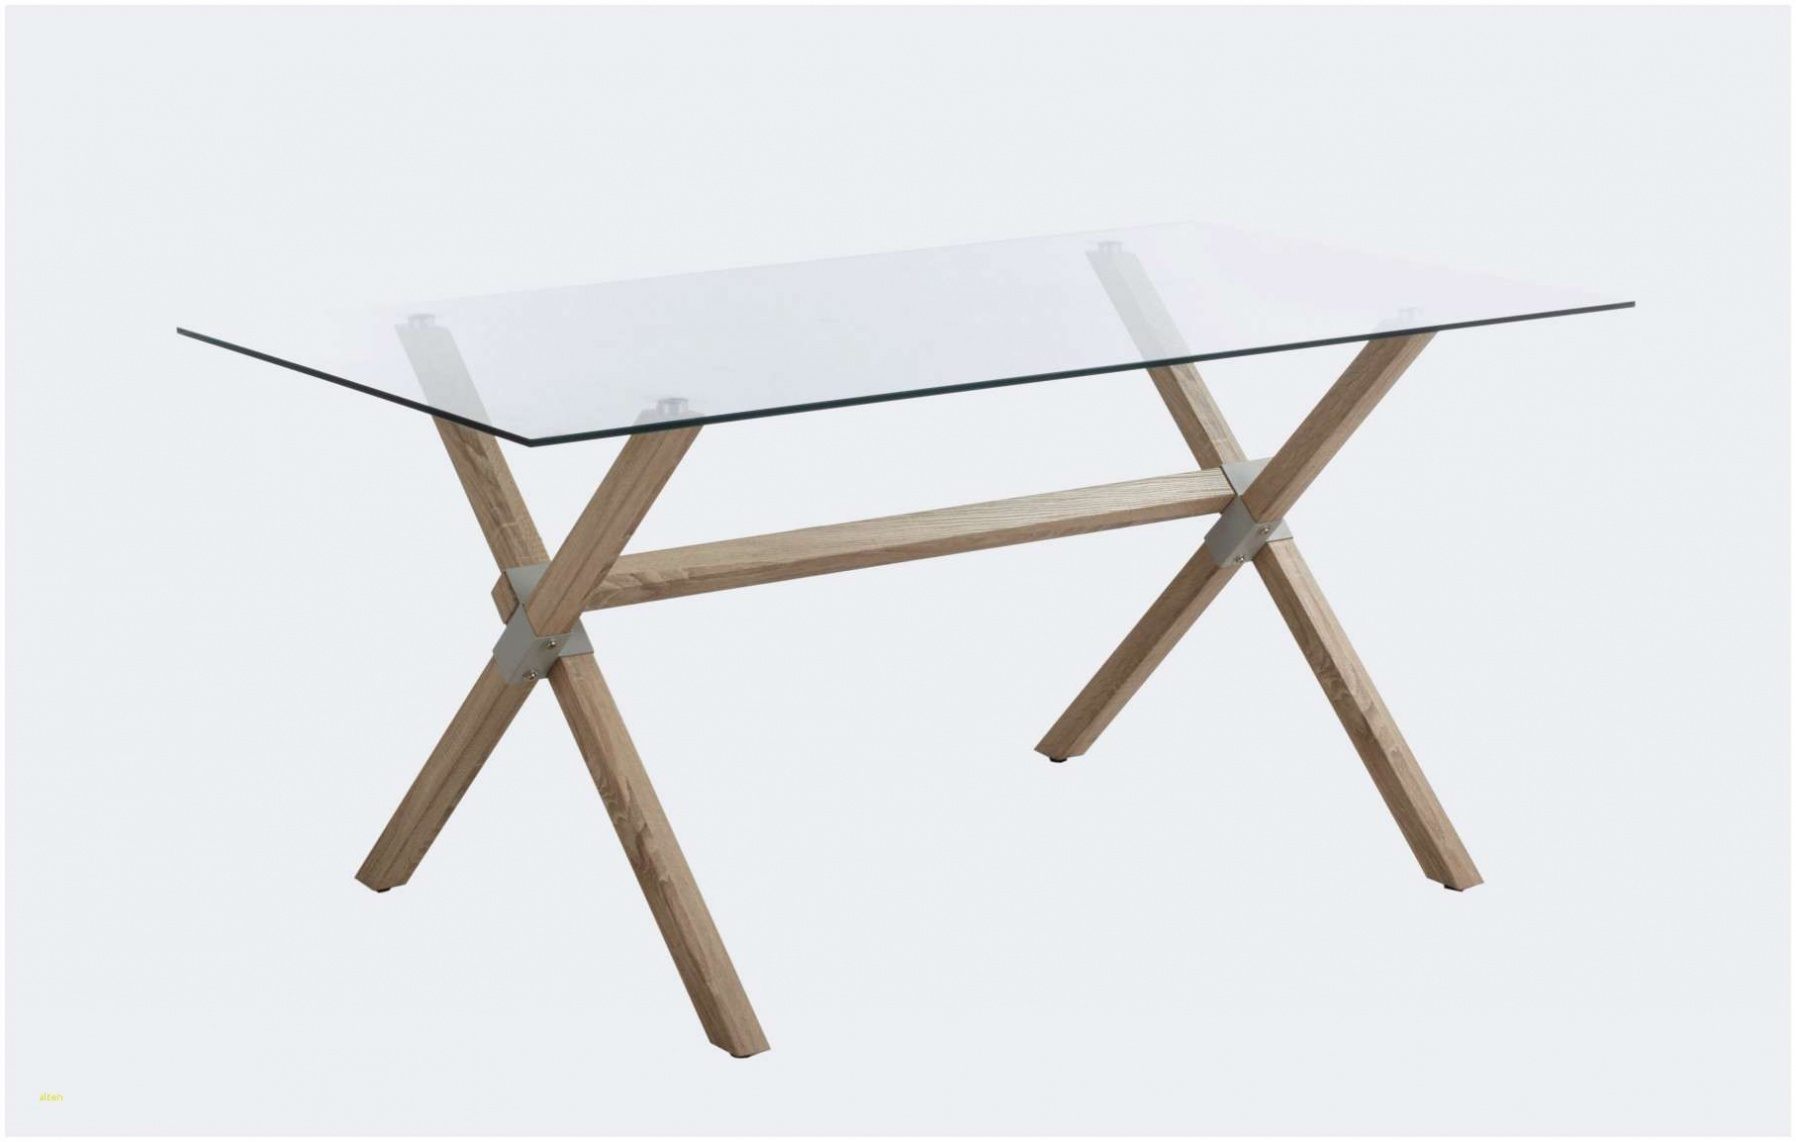 table basse en fer inspirant luxe lesmeubles table basse metal ronde chaise coquille 0d archives de table basse en fer